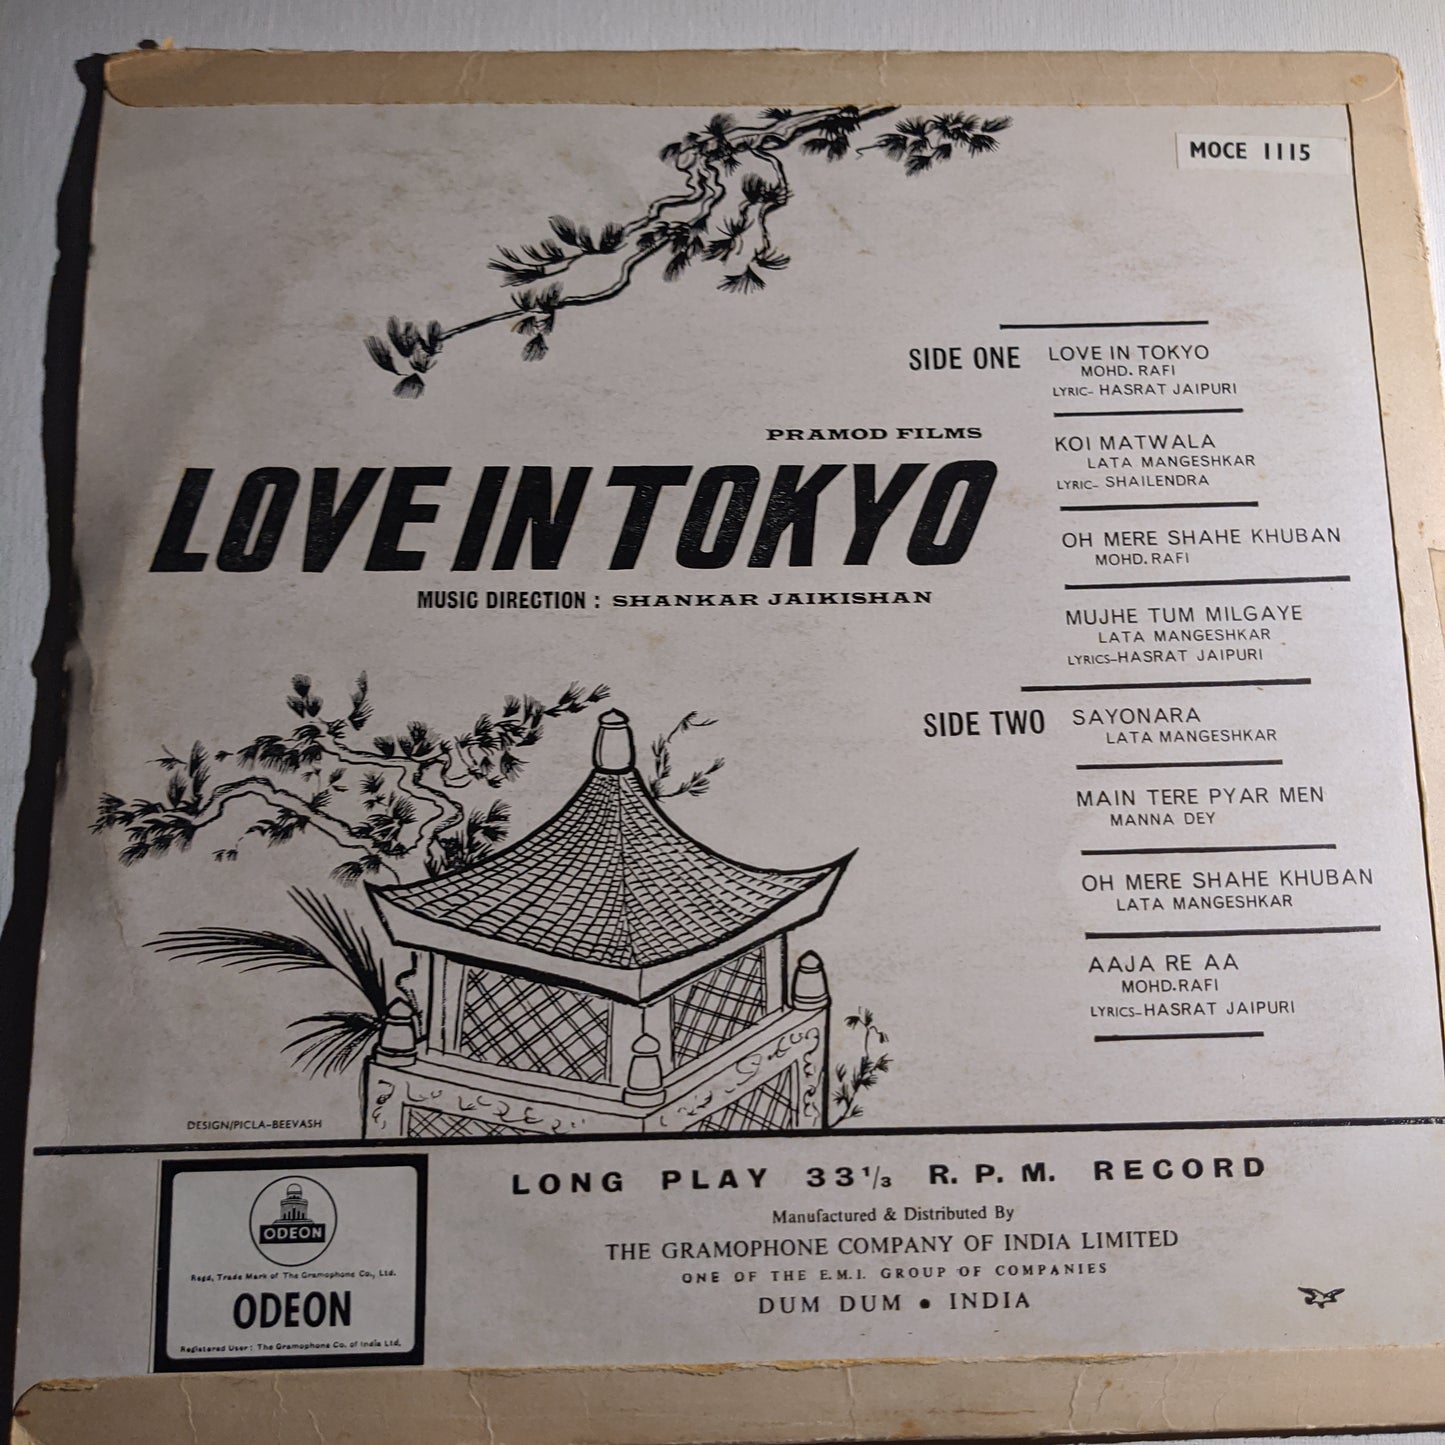 Love in Tokyo - Music by Shankar jaikishan 1st Odeon in VG+ condition